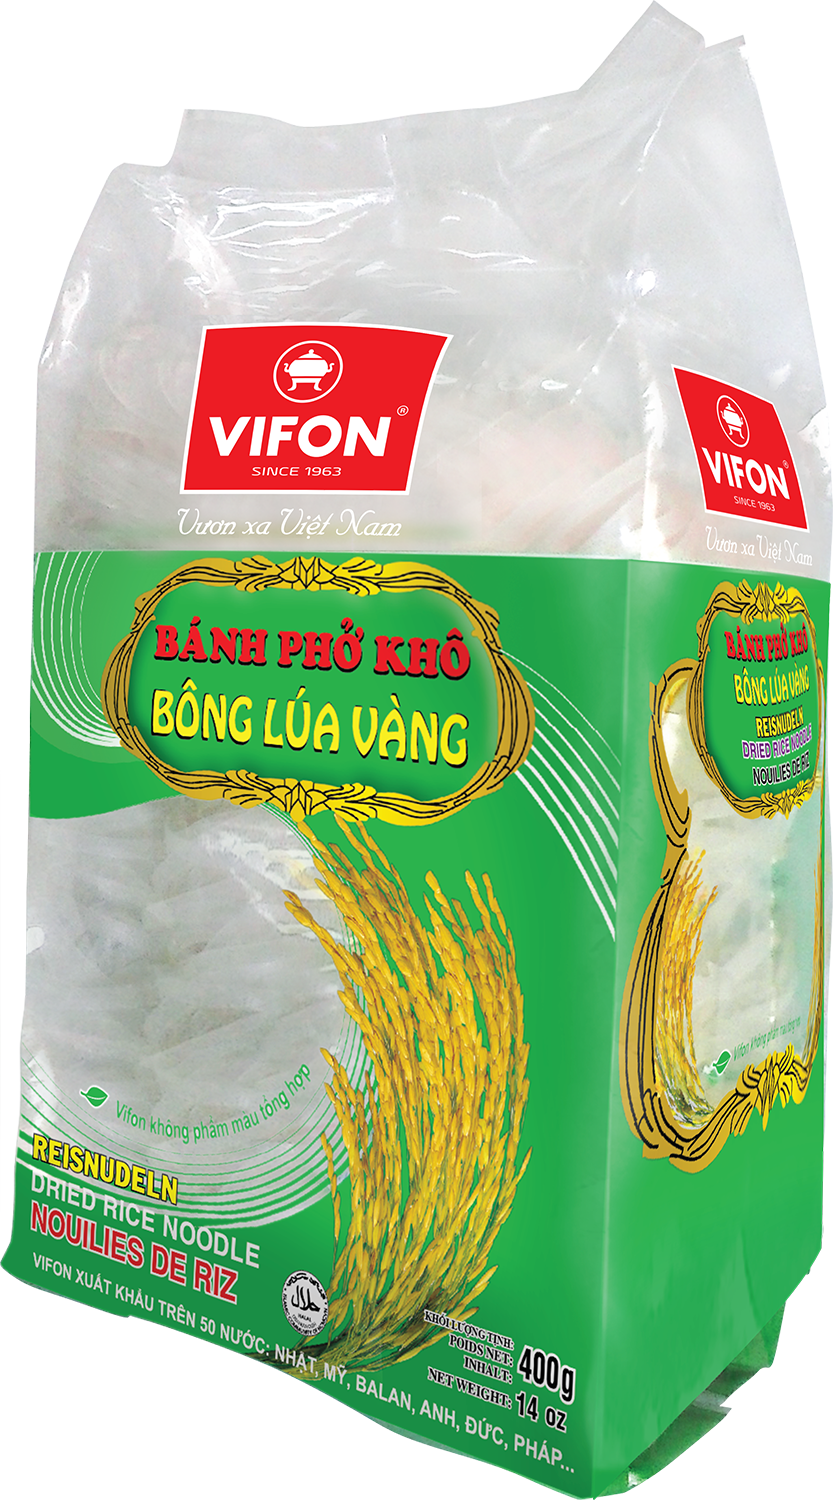 Bong lua vang dried. Noodles clipart rice noodle